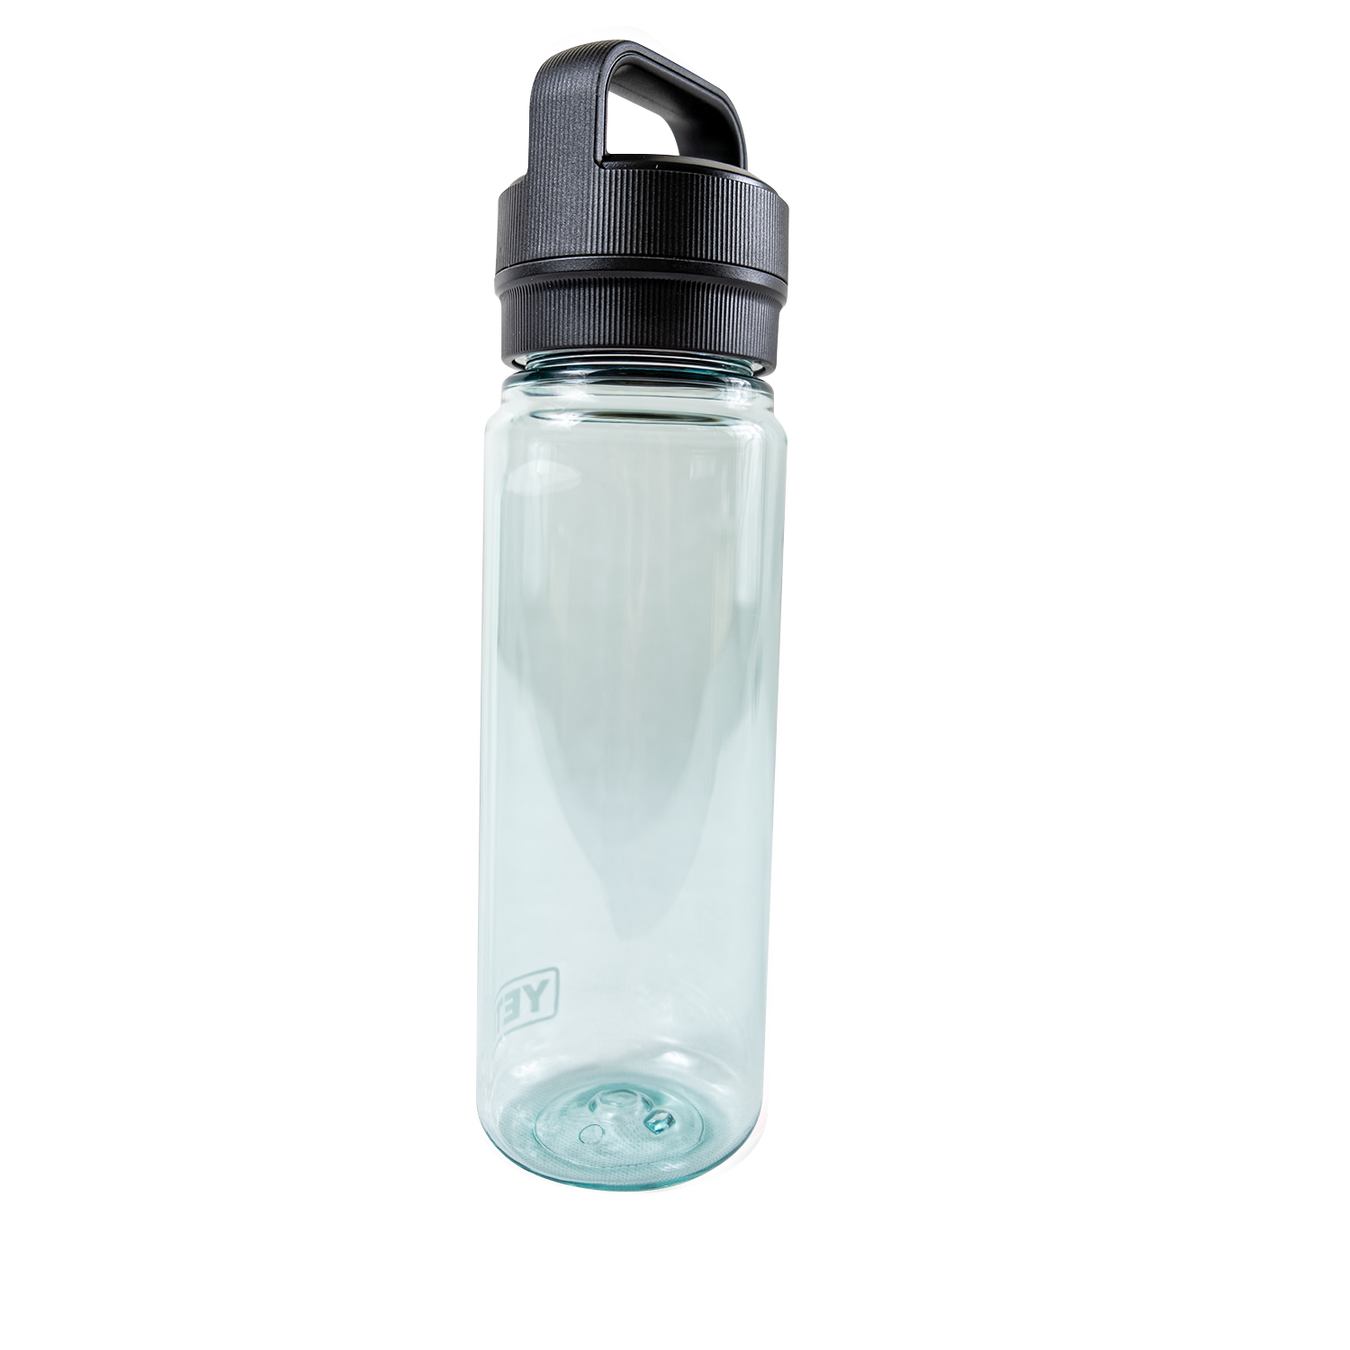 Yeti Yonder 750 ML / 25 OZ Water Bottle Skins & Wraps